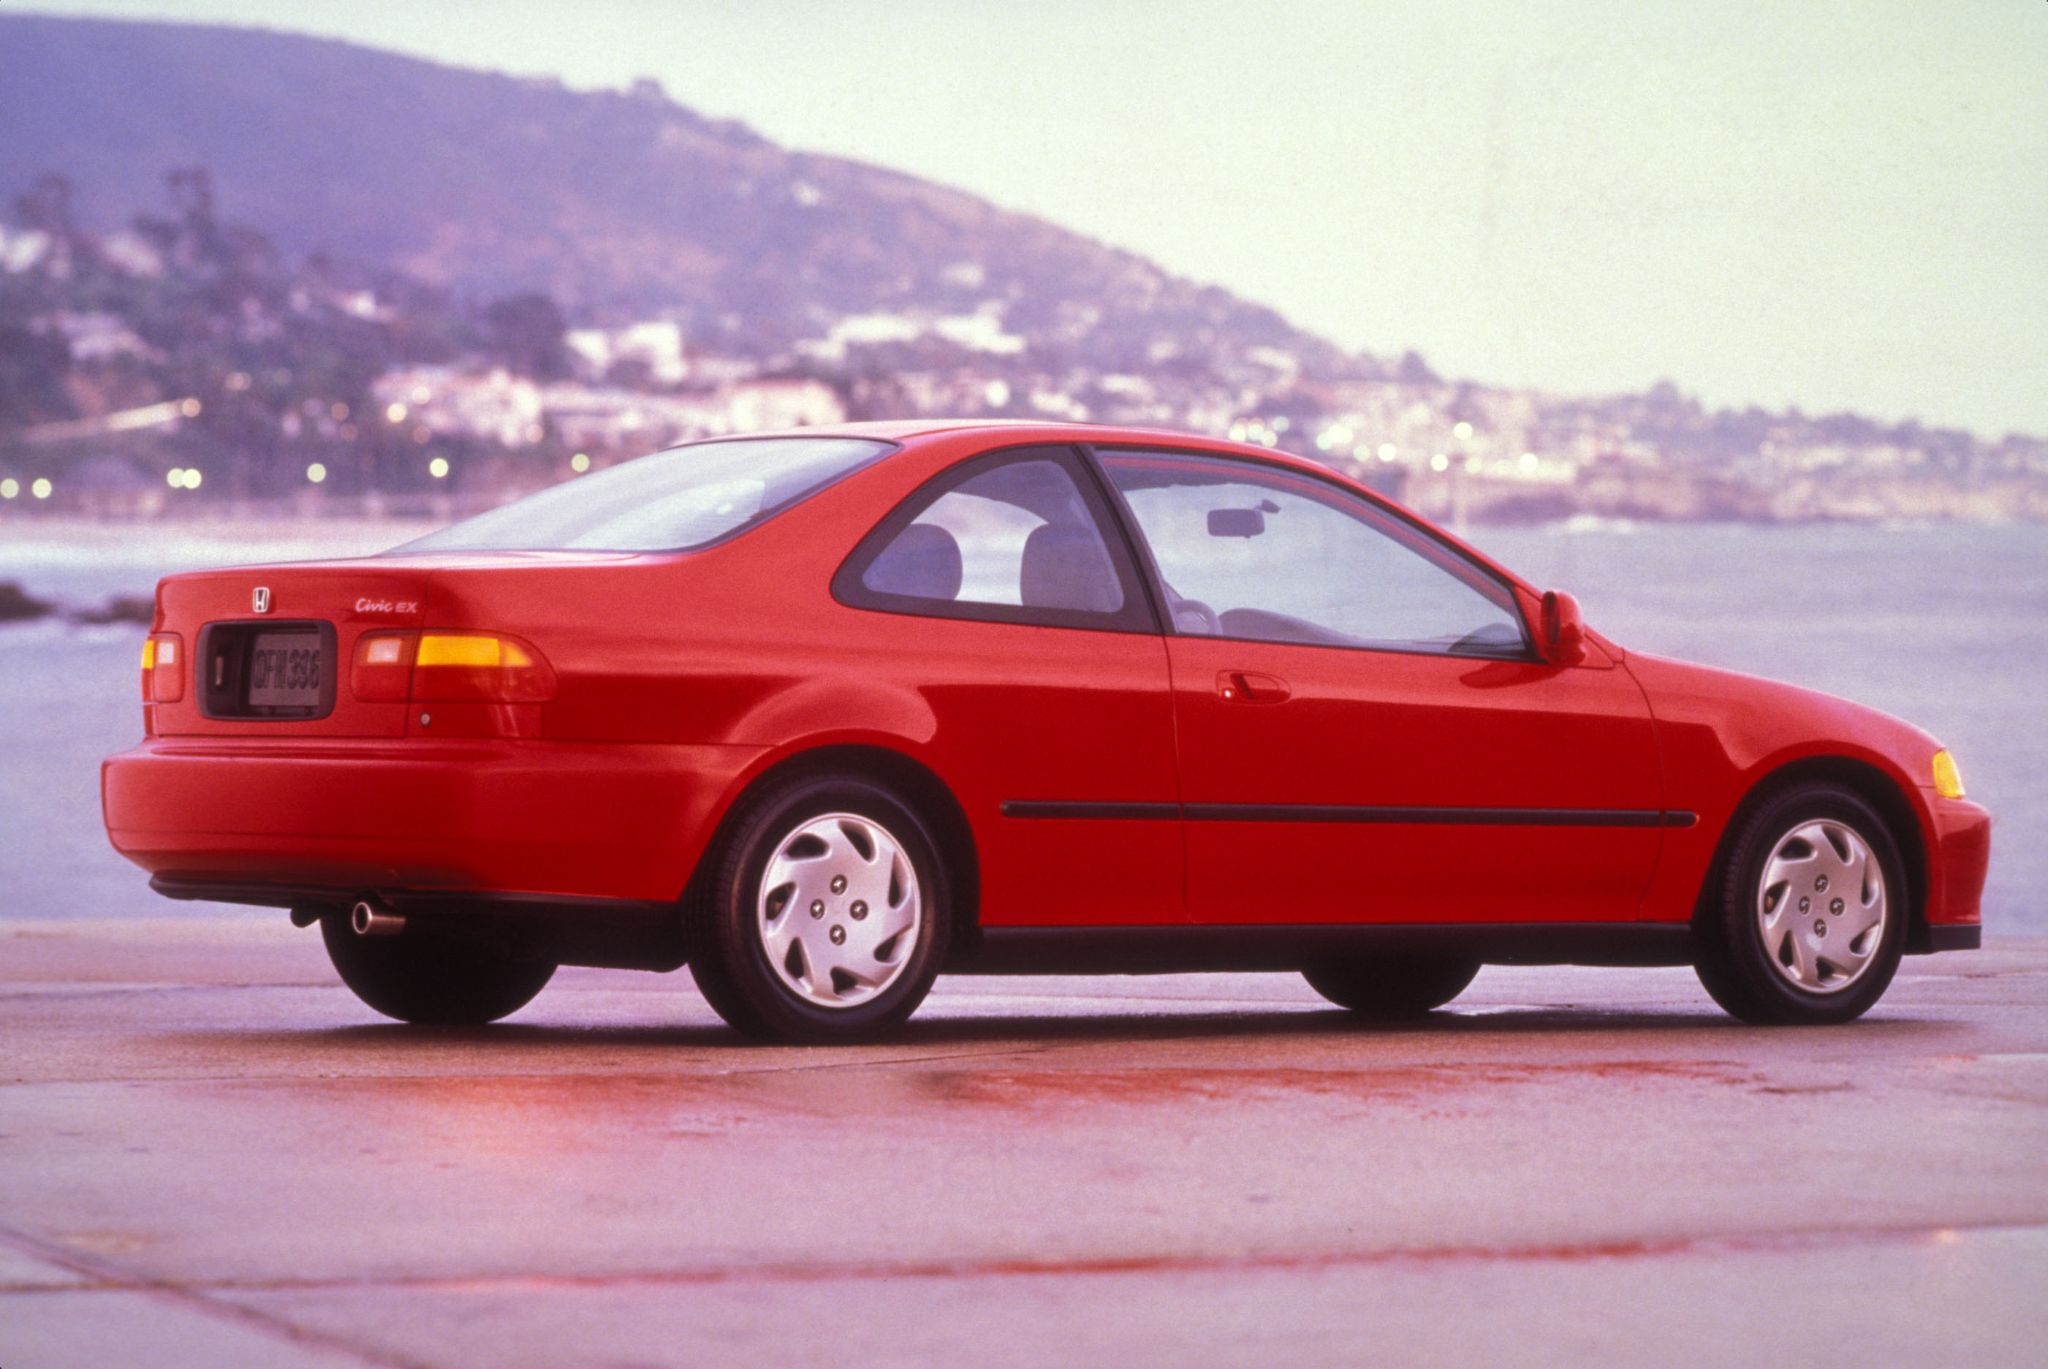 honda civic ex coupe 1995 vermelho traseira